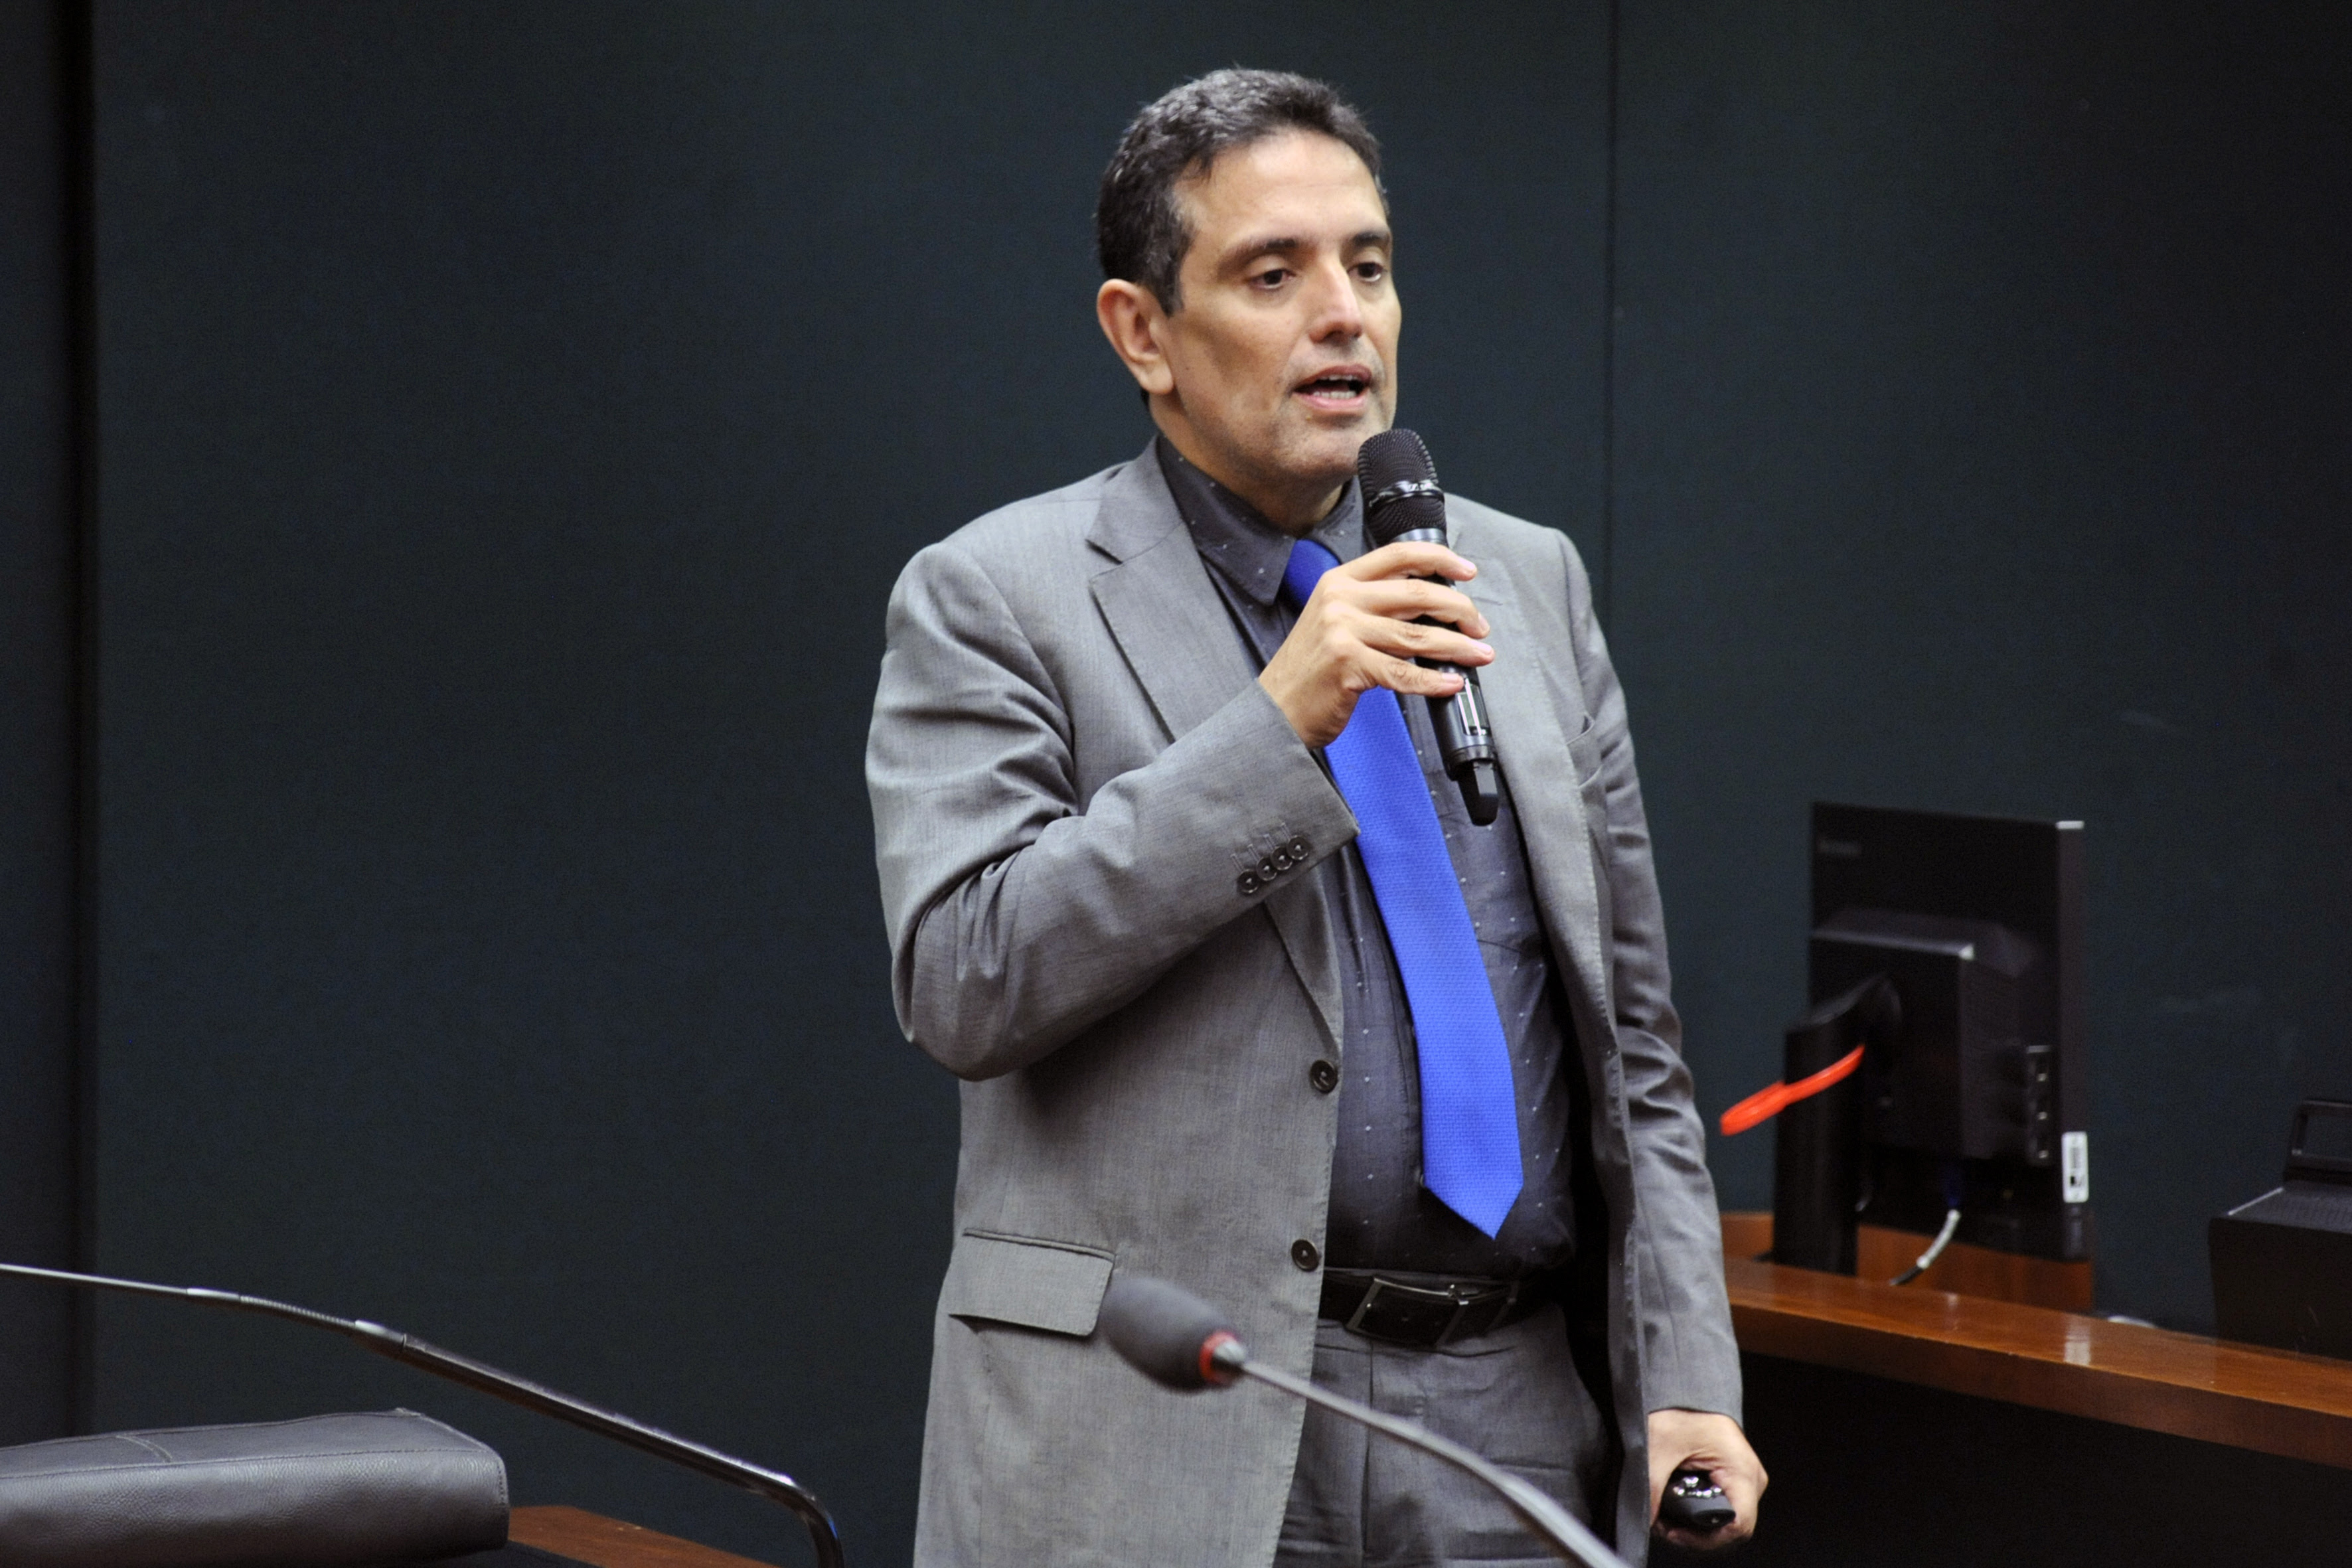 Audiência pública para debater a Reforma da Previdência - PEC 006/2019. Ministério da Economia, Leonardo Rolim